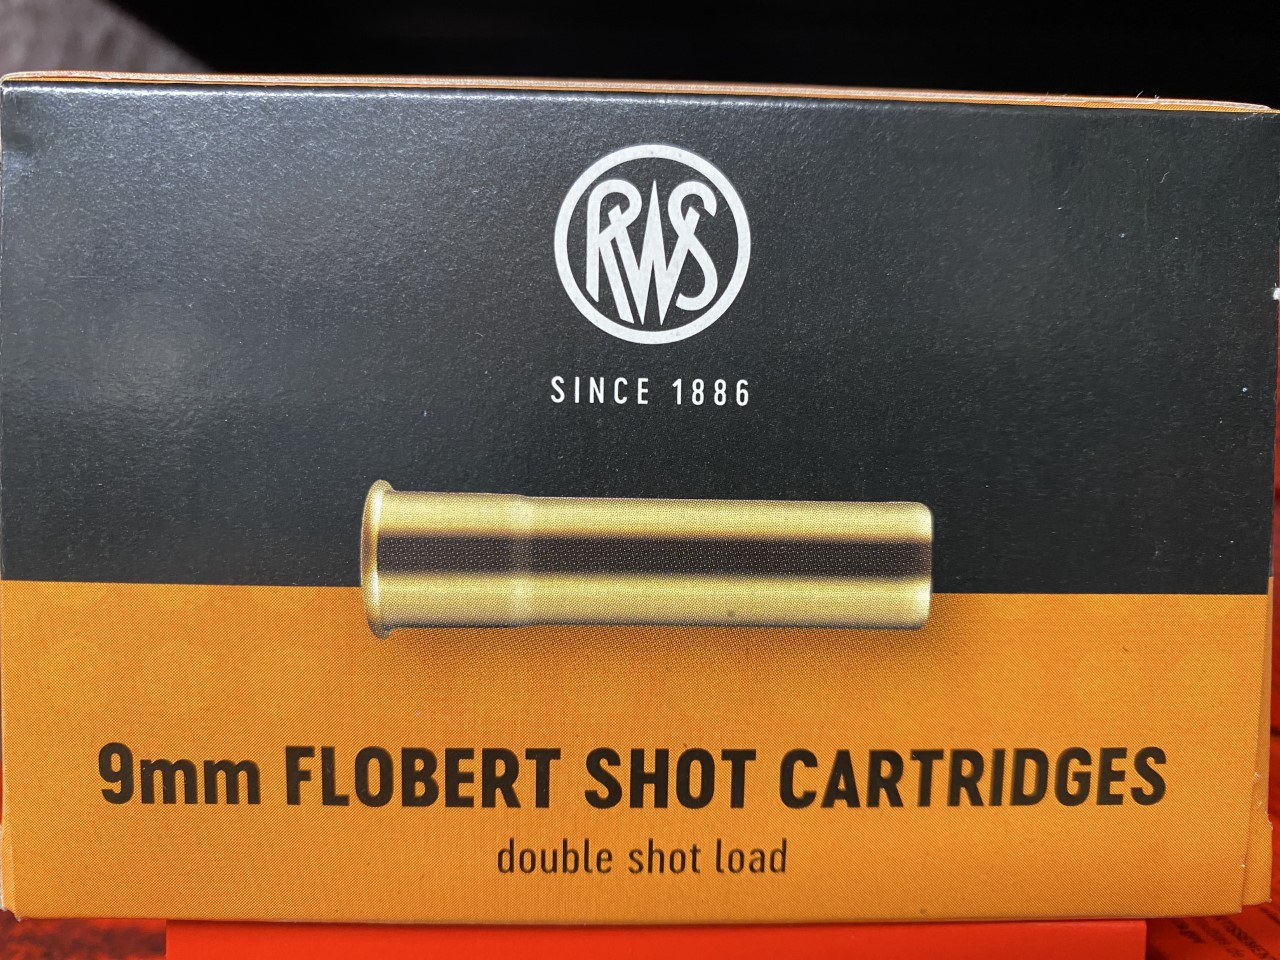 RWS Flobert Shot Cartridges 9mm